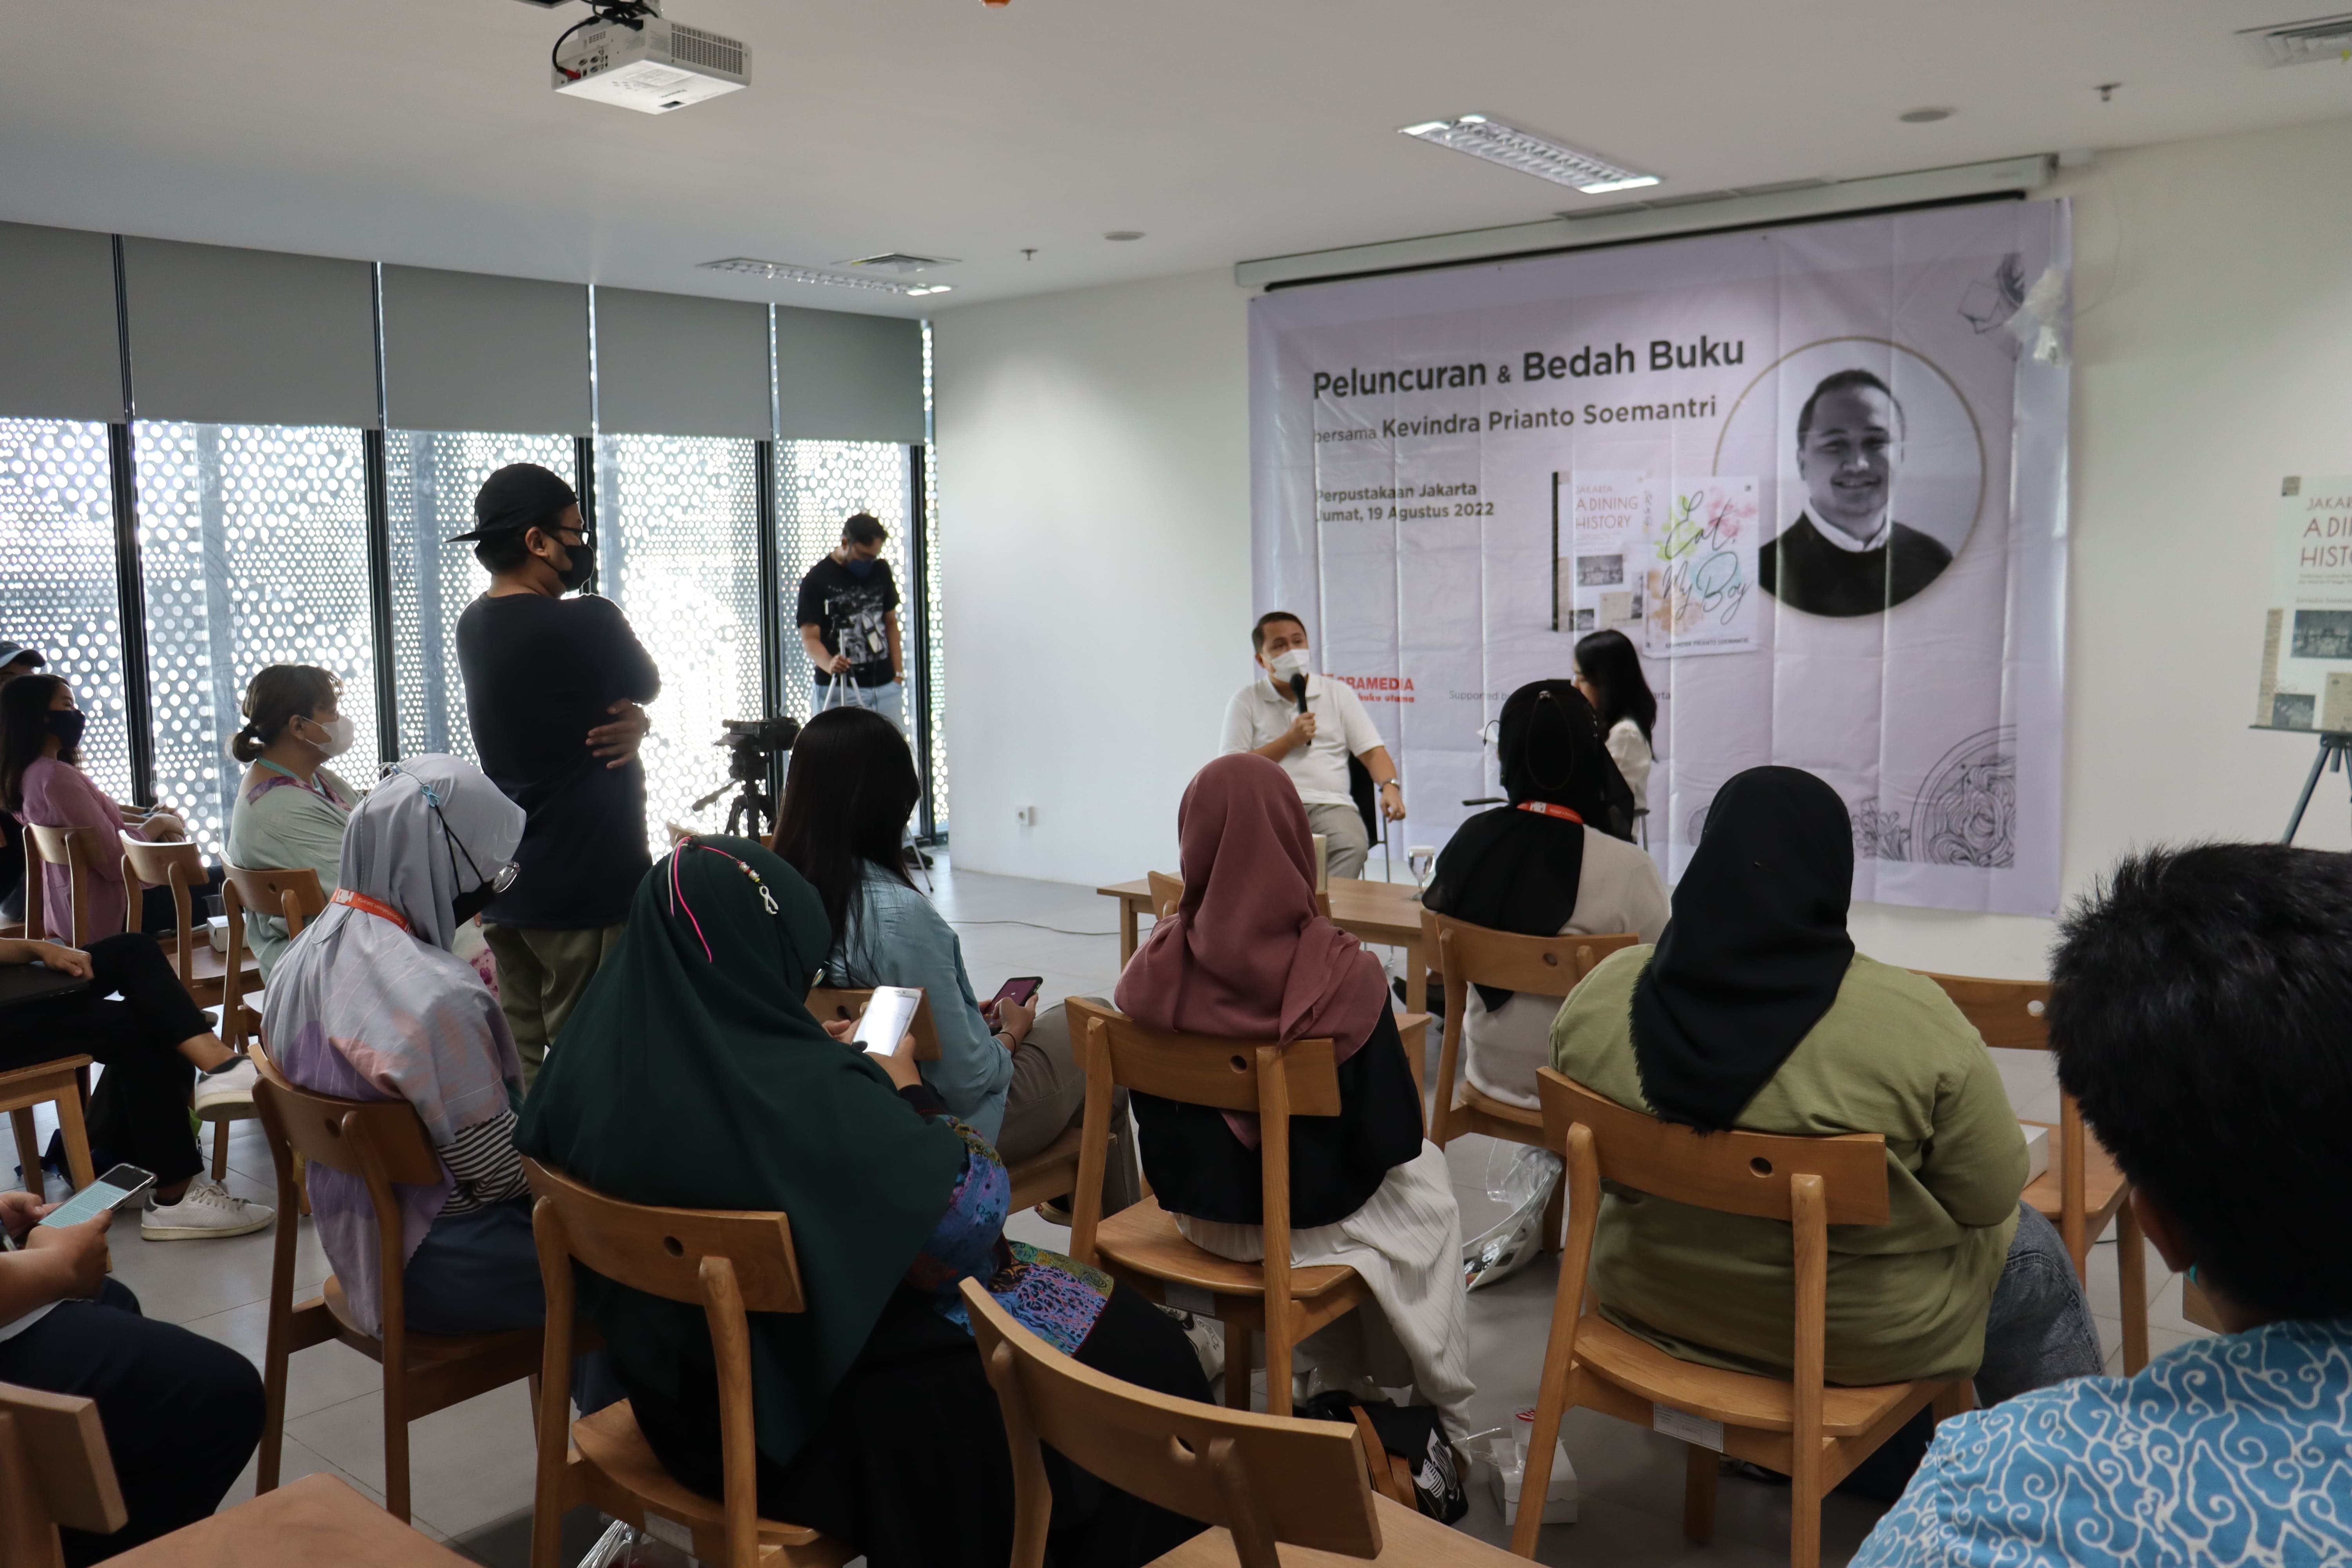 Peluncuran Dan Bedah Buku Bersama Kevindra Prianto Soemantri